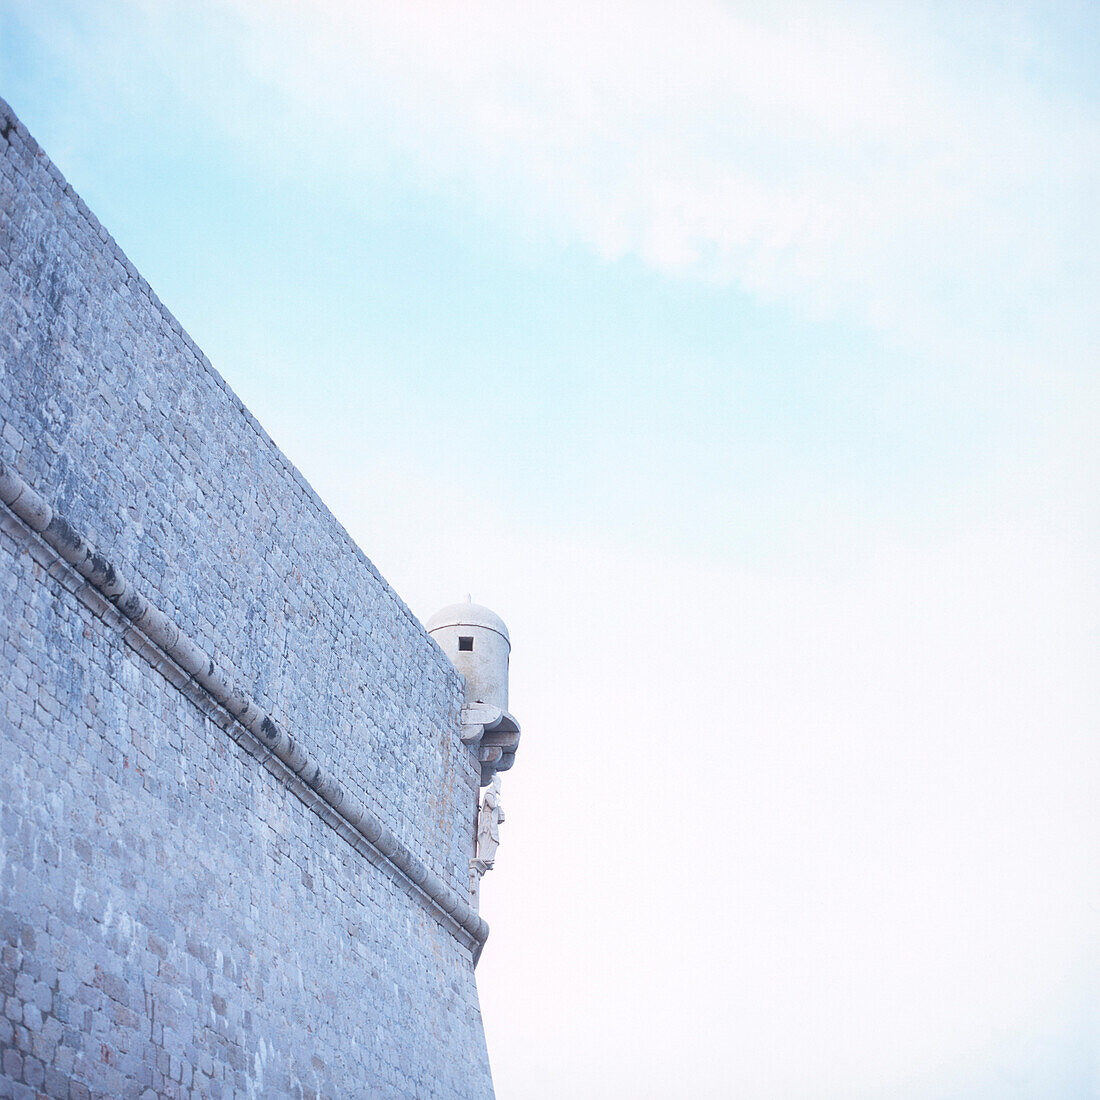 Schutzmauer von Dubrovnik mit Schutzpatron St. Blasius, Dubrovnik, Dalmatien, Kroatien